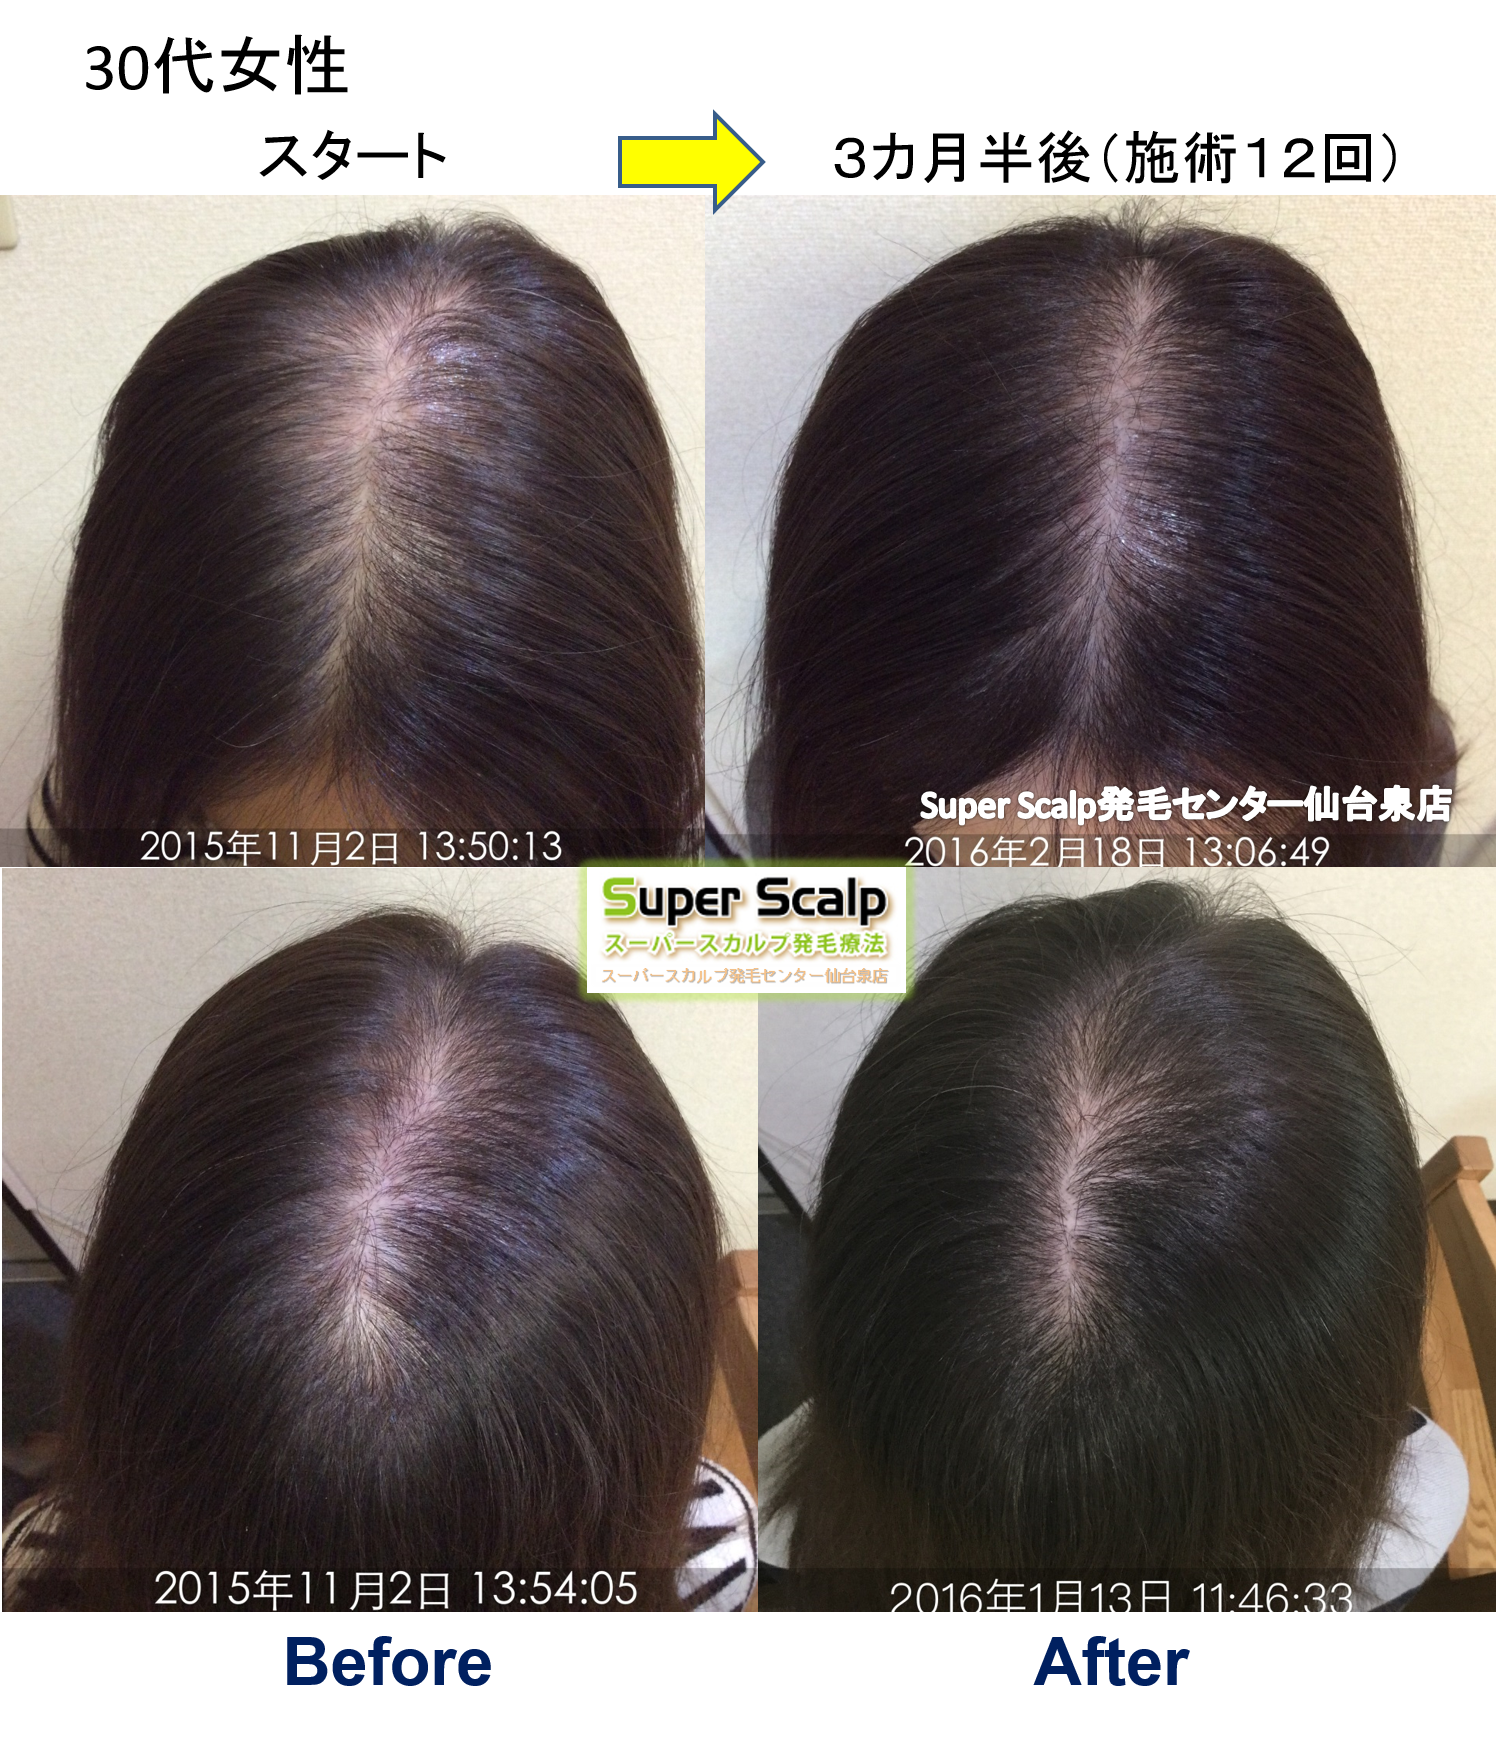 人工甘味料で薄毛に！？仙台市30代女性発毛実績。「頭皮の状態を毎回確認できて、少しずつ改善していることに満足しています。」